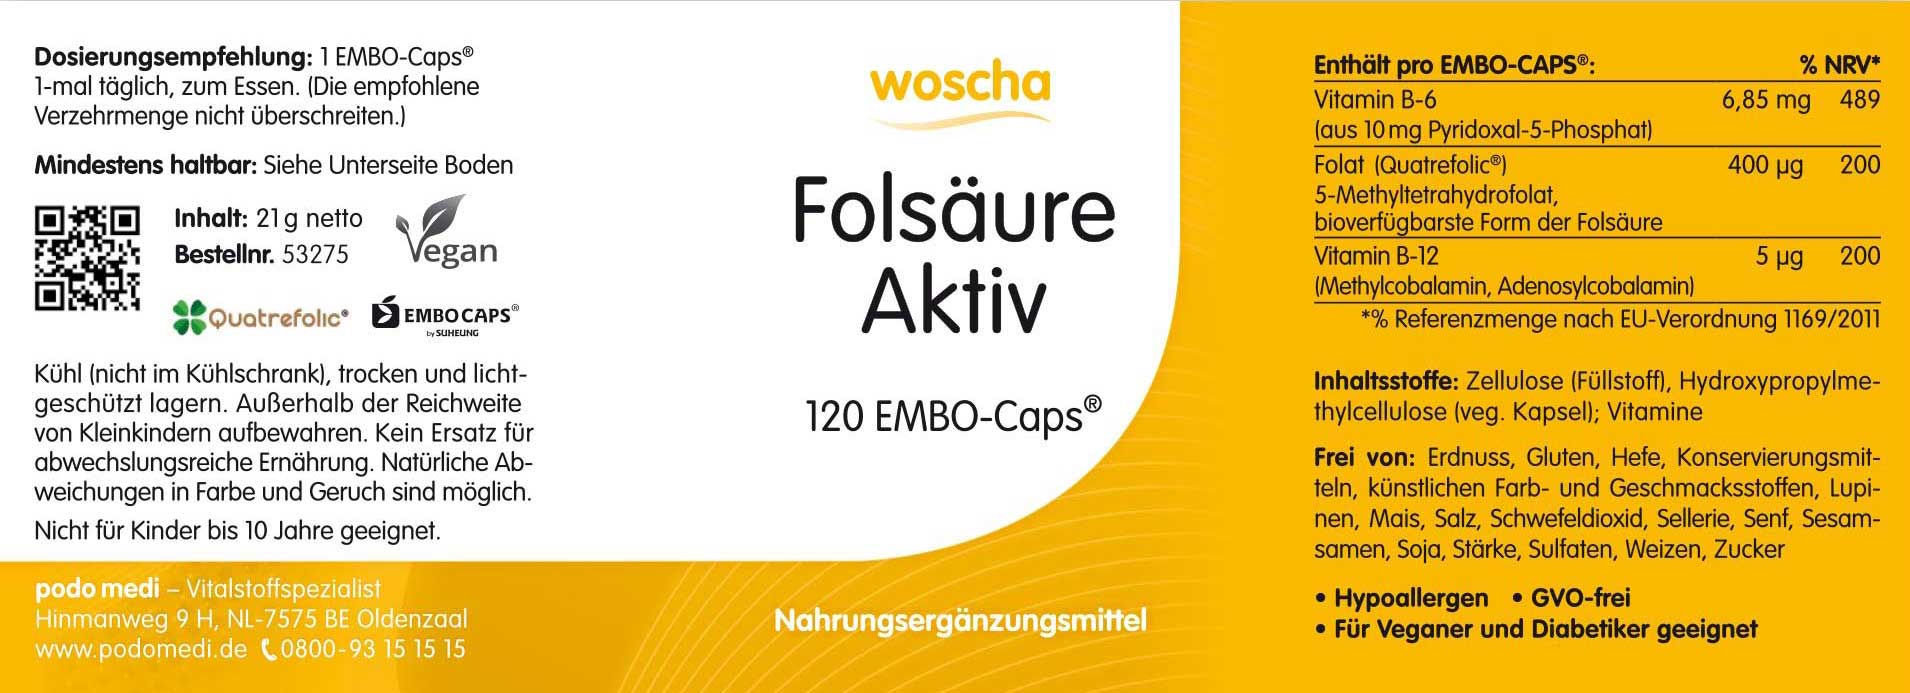 Woscha Folsäure Aktiv von podo medi beinhaltet 120 Kapseln Etikett